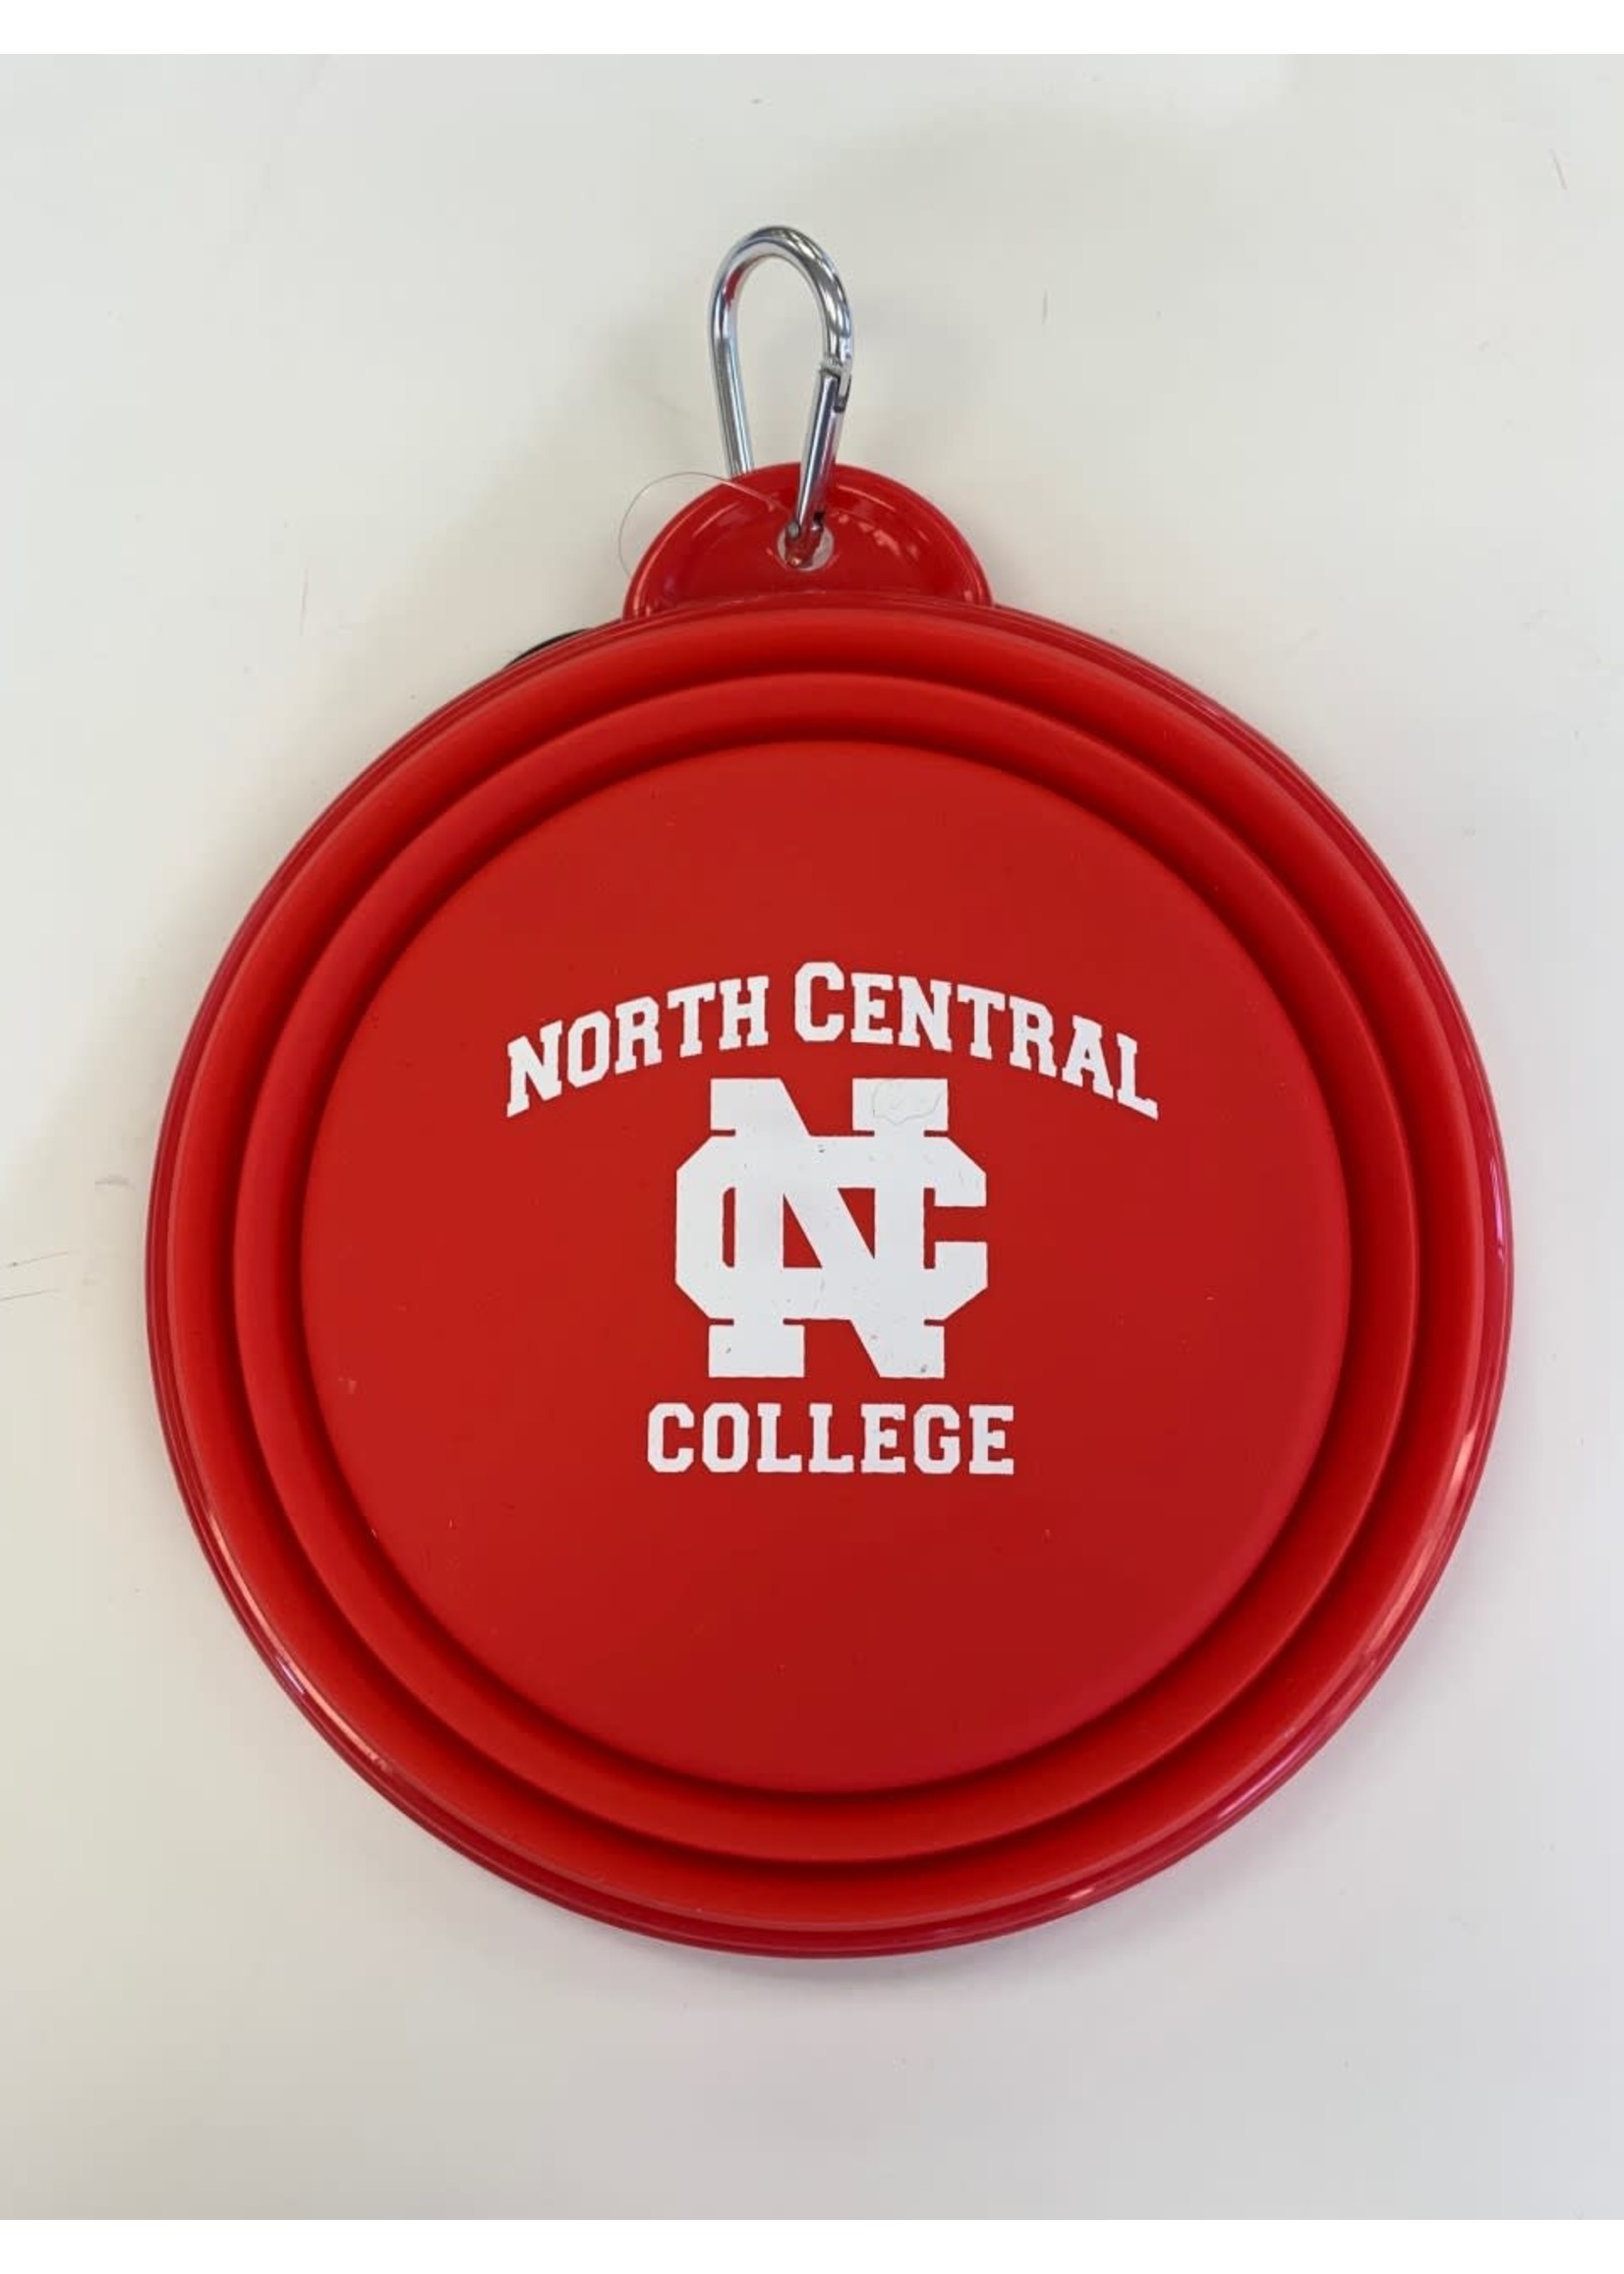 Neil Enterprises North Central College Collapsible Pet Bowl